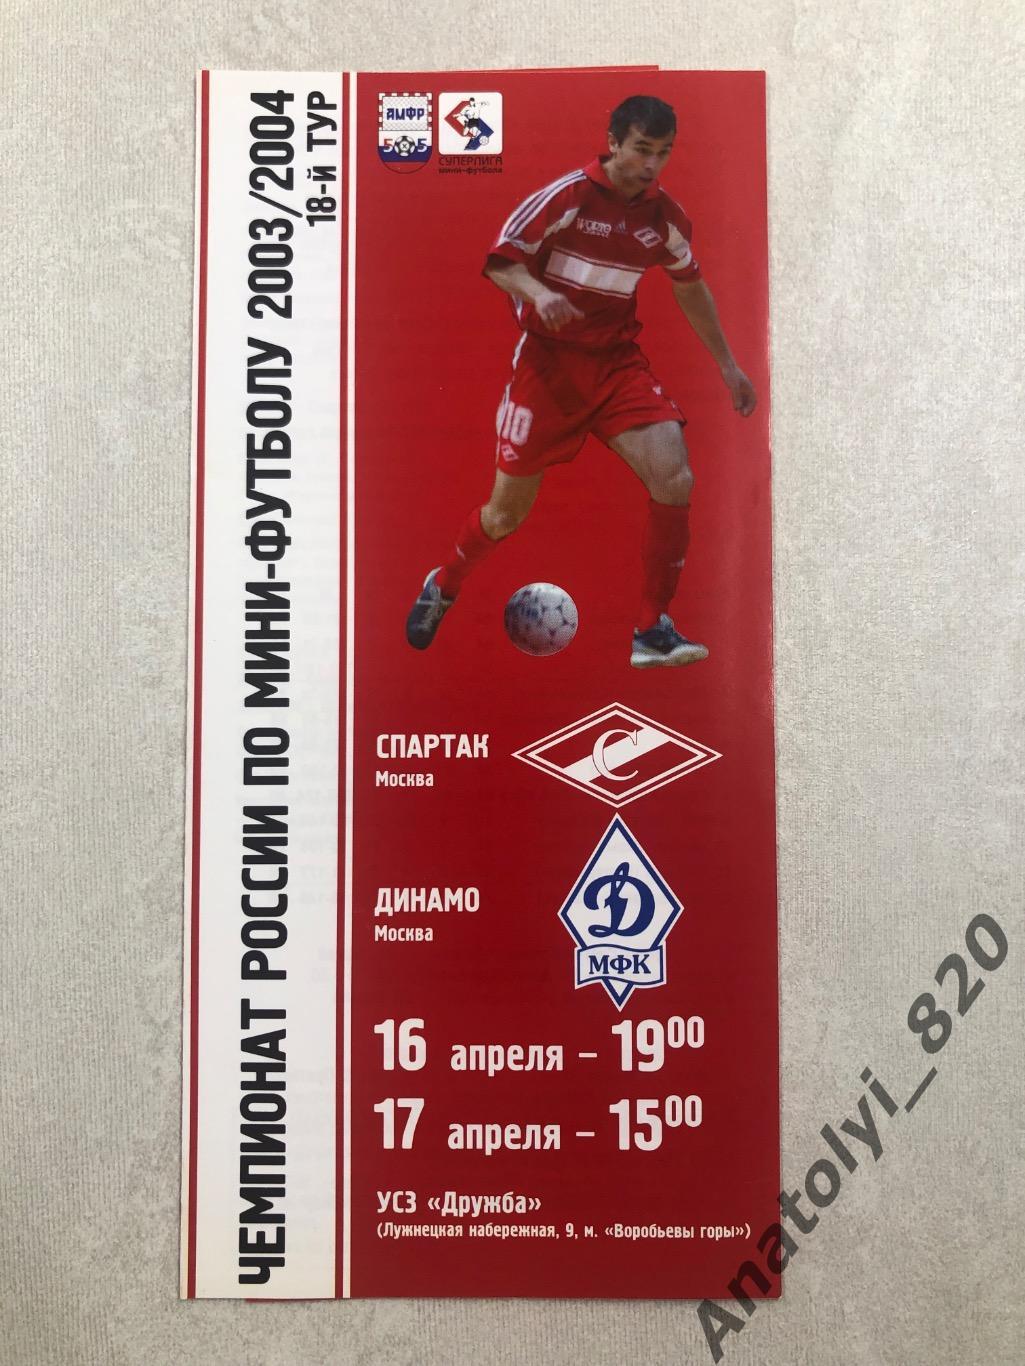 Спартак Москва - Динамо Москва, 2004 год мини-футбол